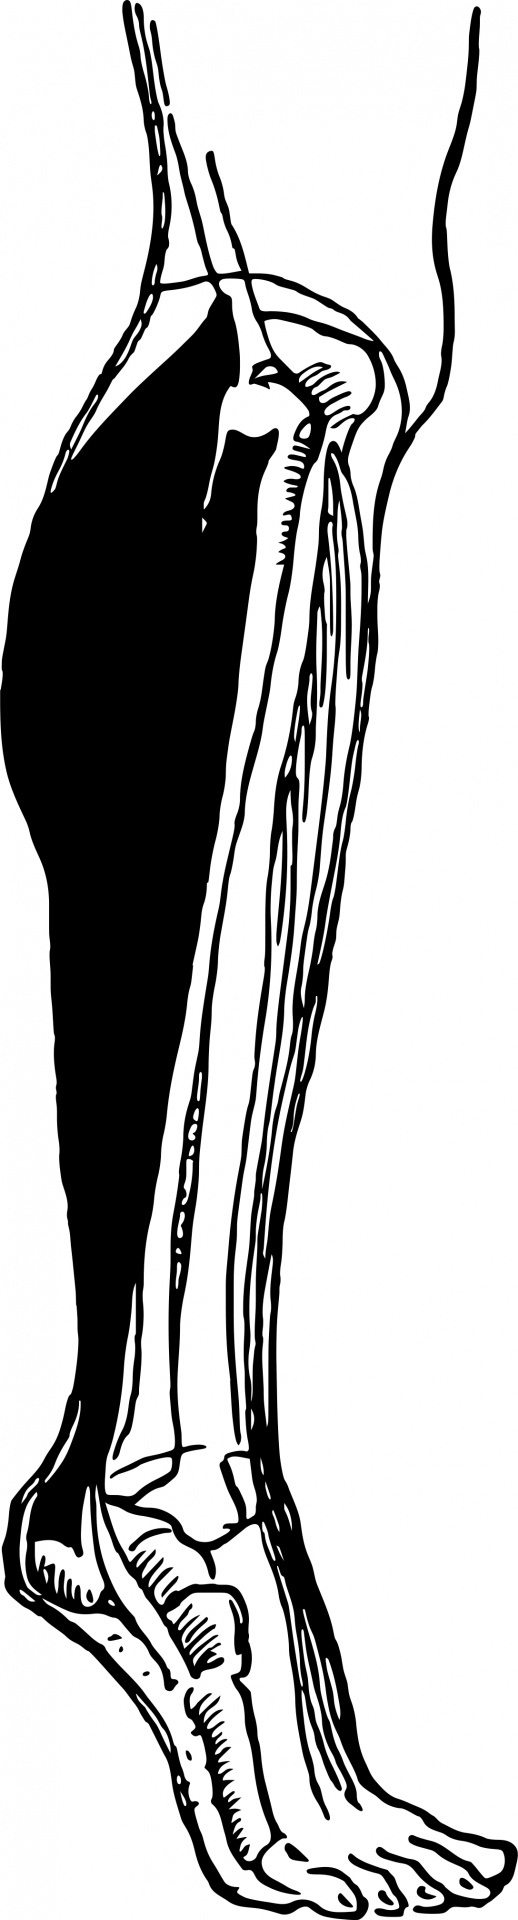 leg clip art black and white - photo #32